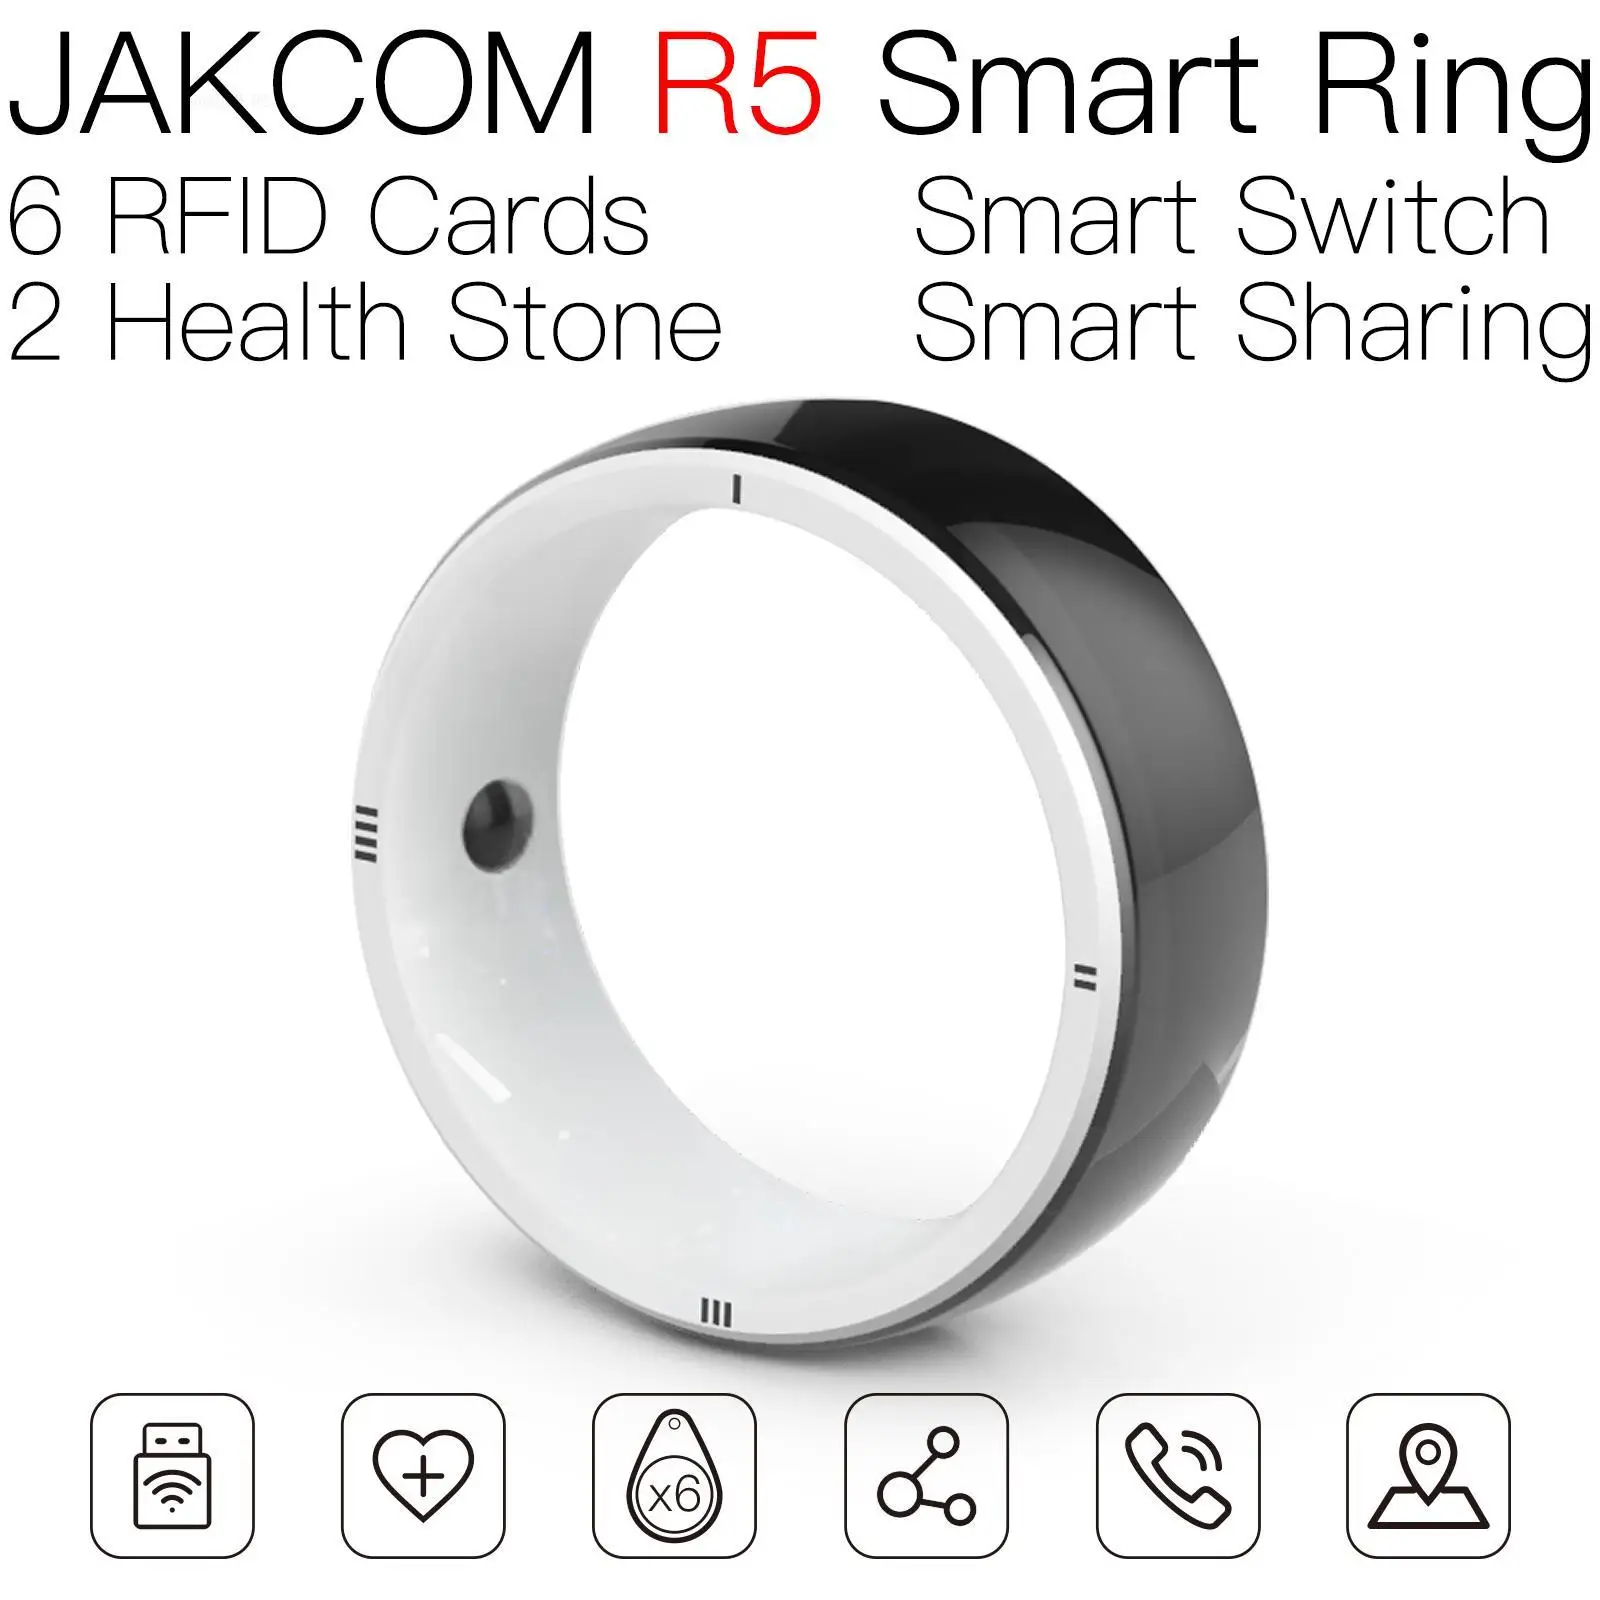 

Смарт-кольцо JAKCOM R5 для мужчин и женщин, Фотокарта, 100 шт., пусковое устройство для самозащиты, часы maimo em4100 tk4100, Чтение 125 кГц, 72 карты без надписей